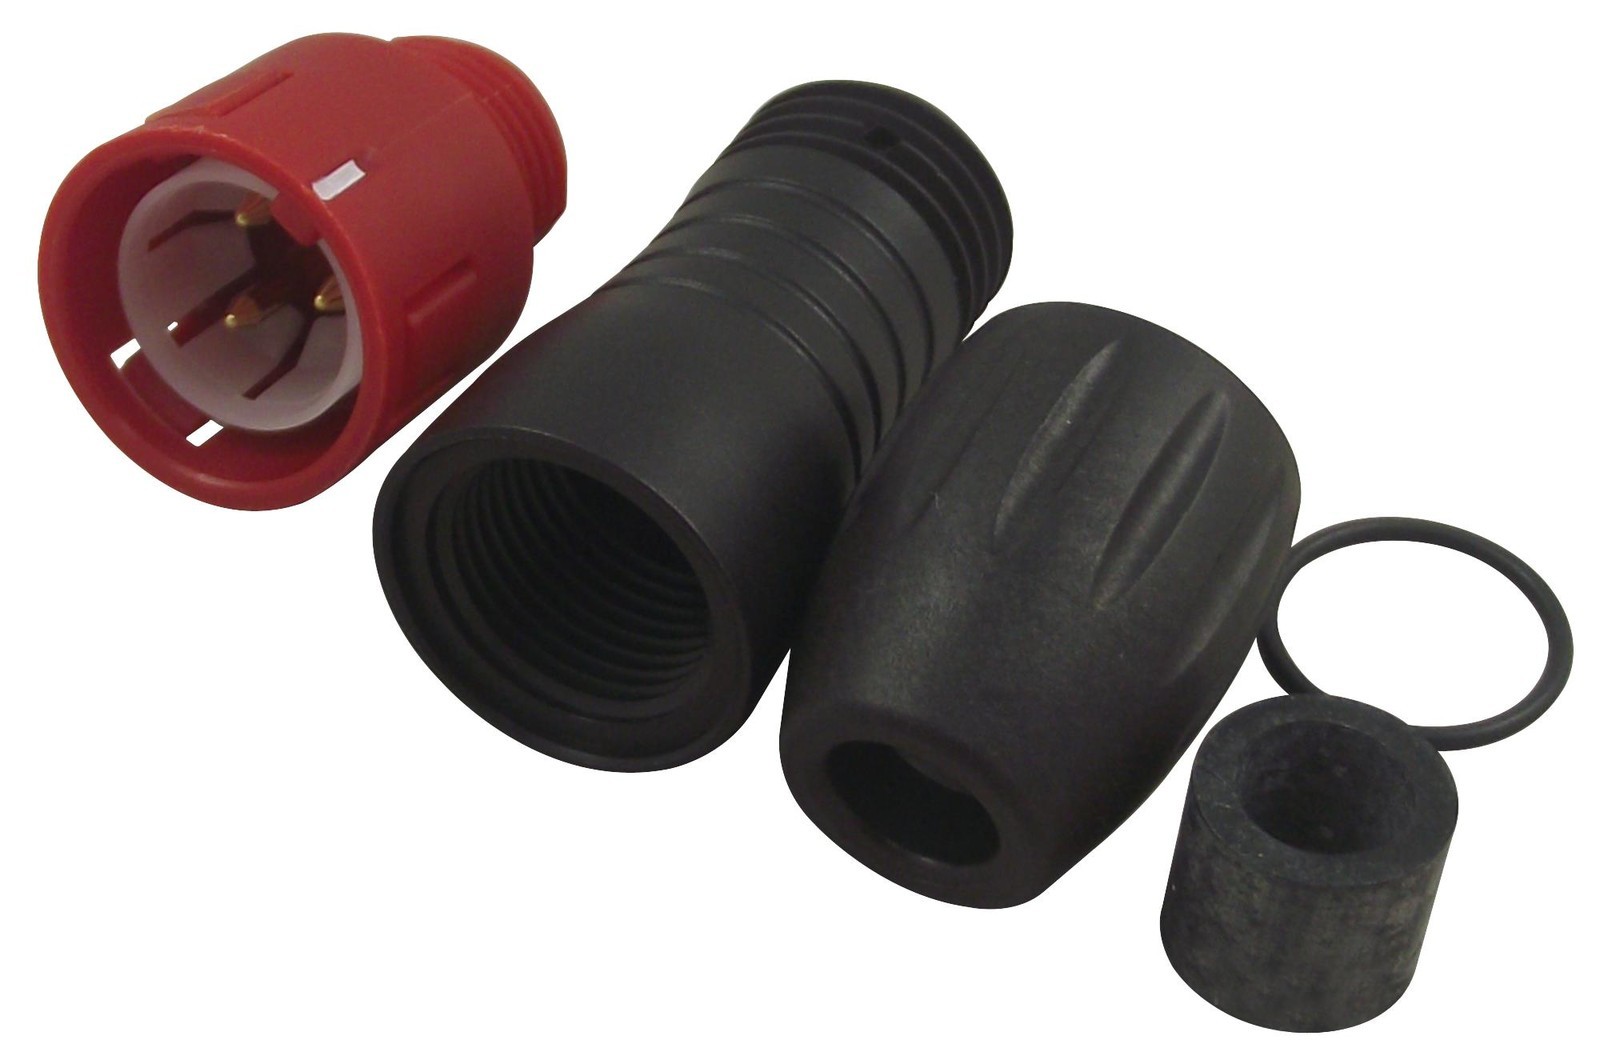 Binder 99-9105-50-03 Plug, Free, 4-6mm, Red, 3Way